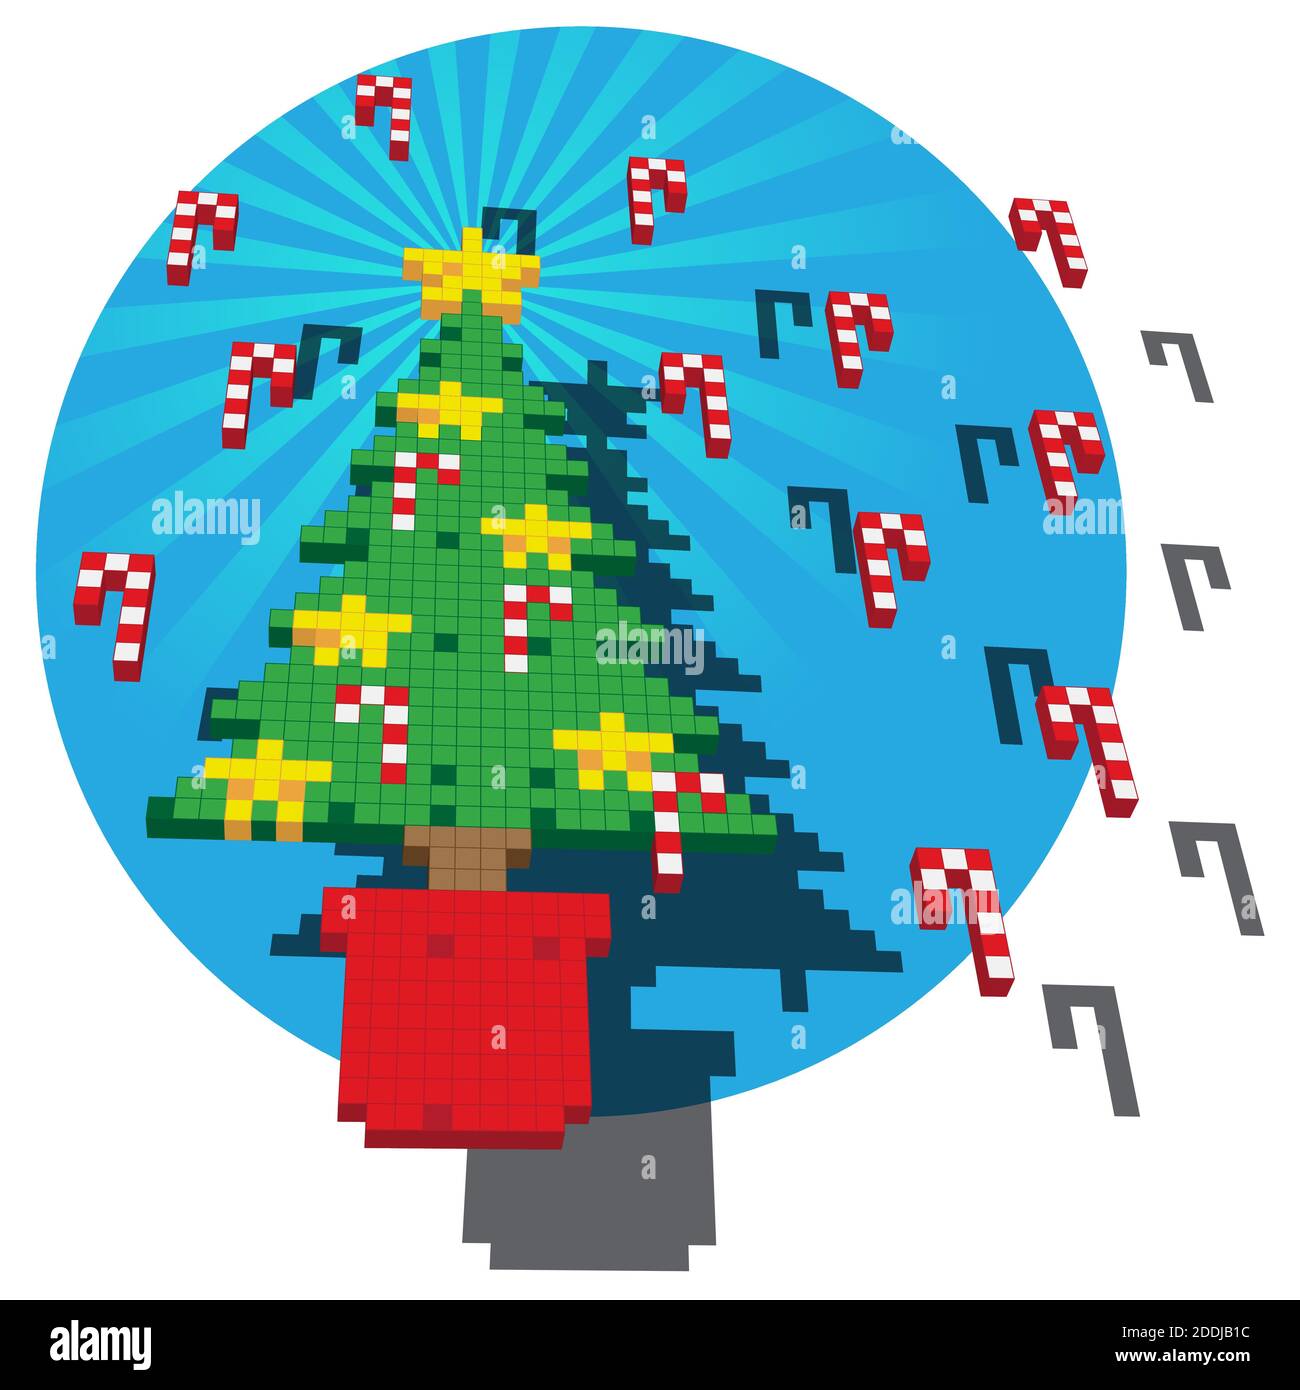 Eine Retro-Spiel Pixel-Illustration eines Weihnachtsbaums mit Sternen und Candy Canes vor einem blauen kreisförmigen Hintergrund. Stock Vektor